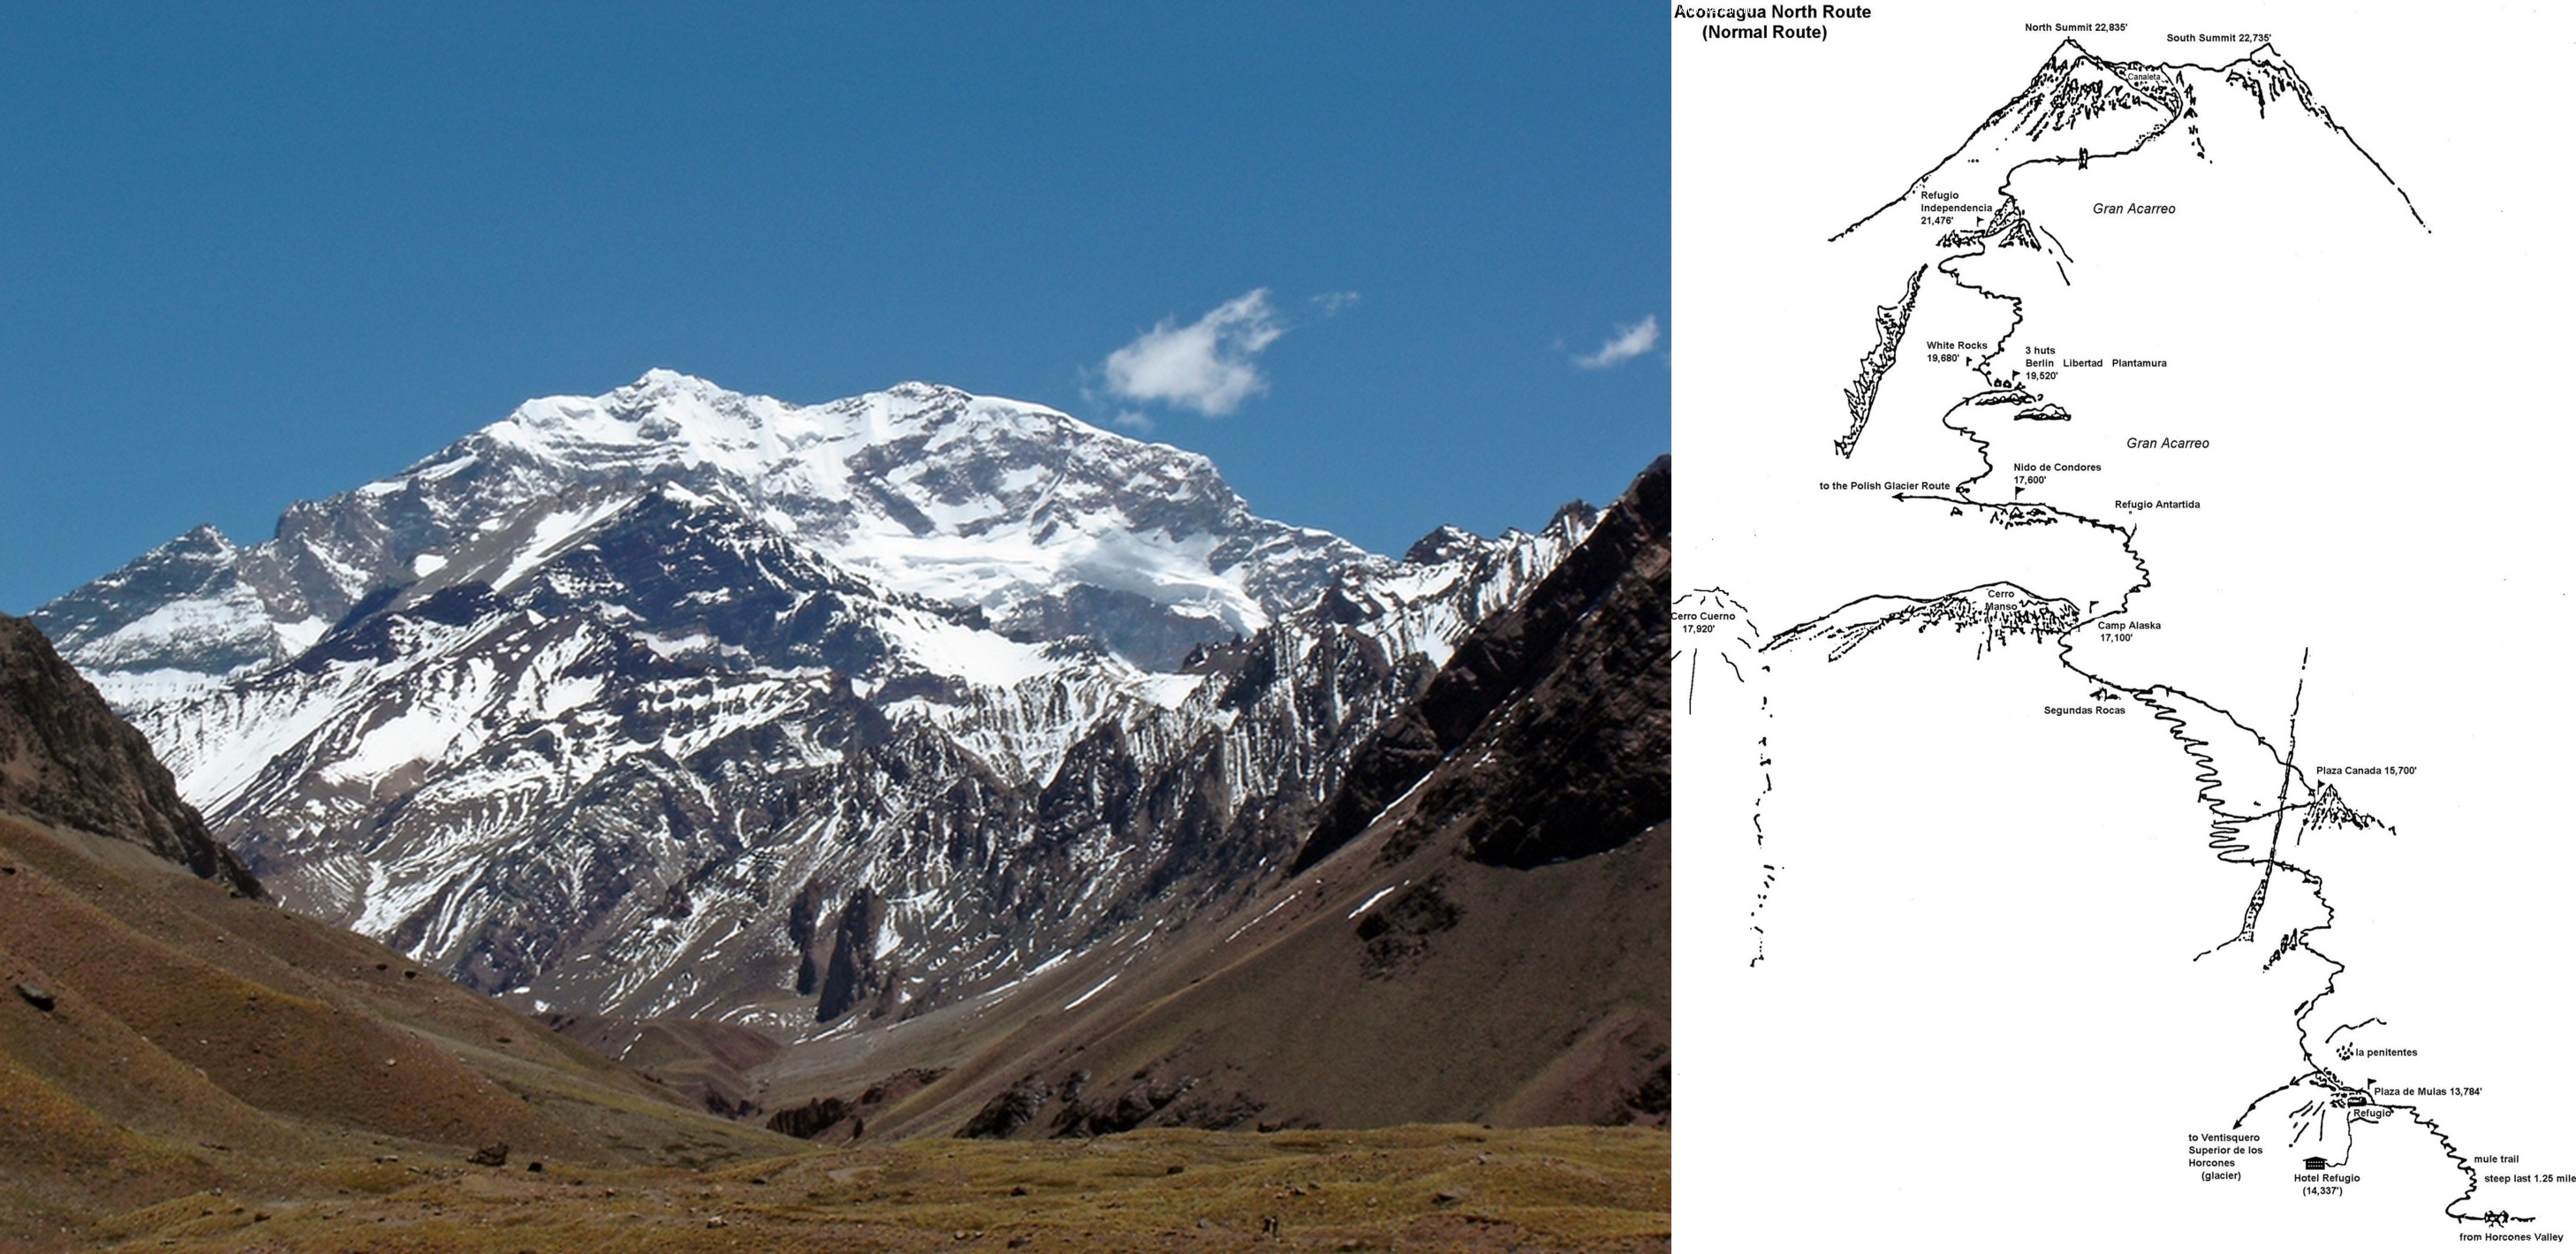  Аконкагуа - высшая точка Южной Америки и схема стандартного восхождения на Аконкагуа